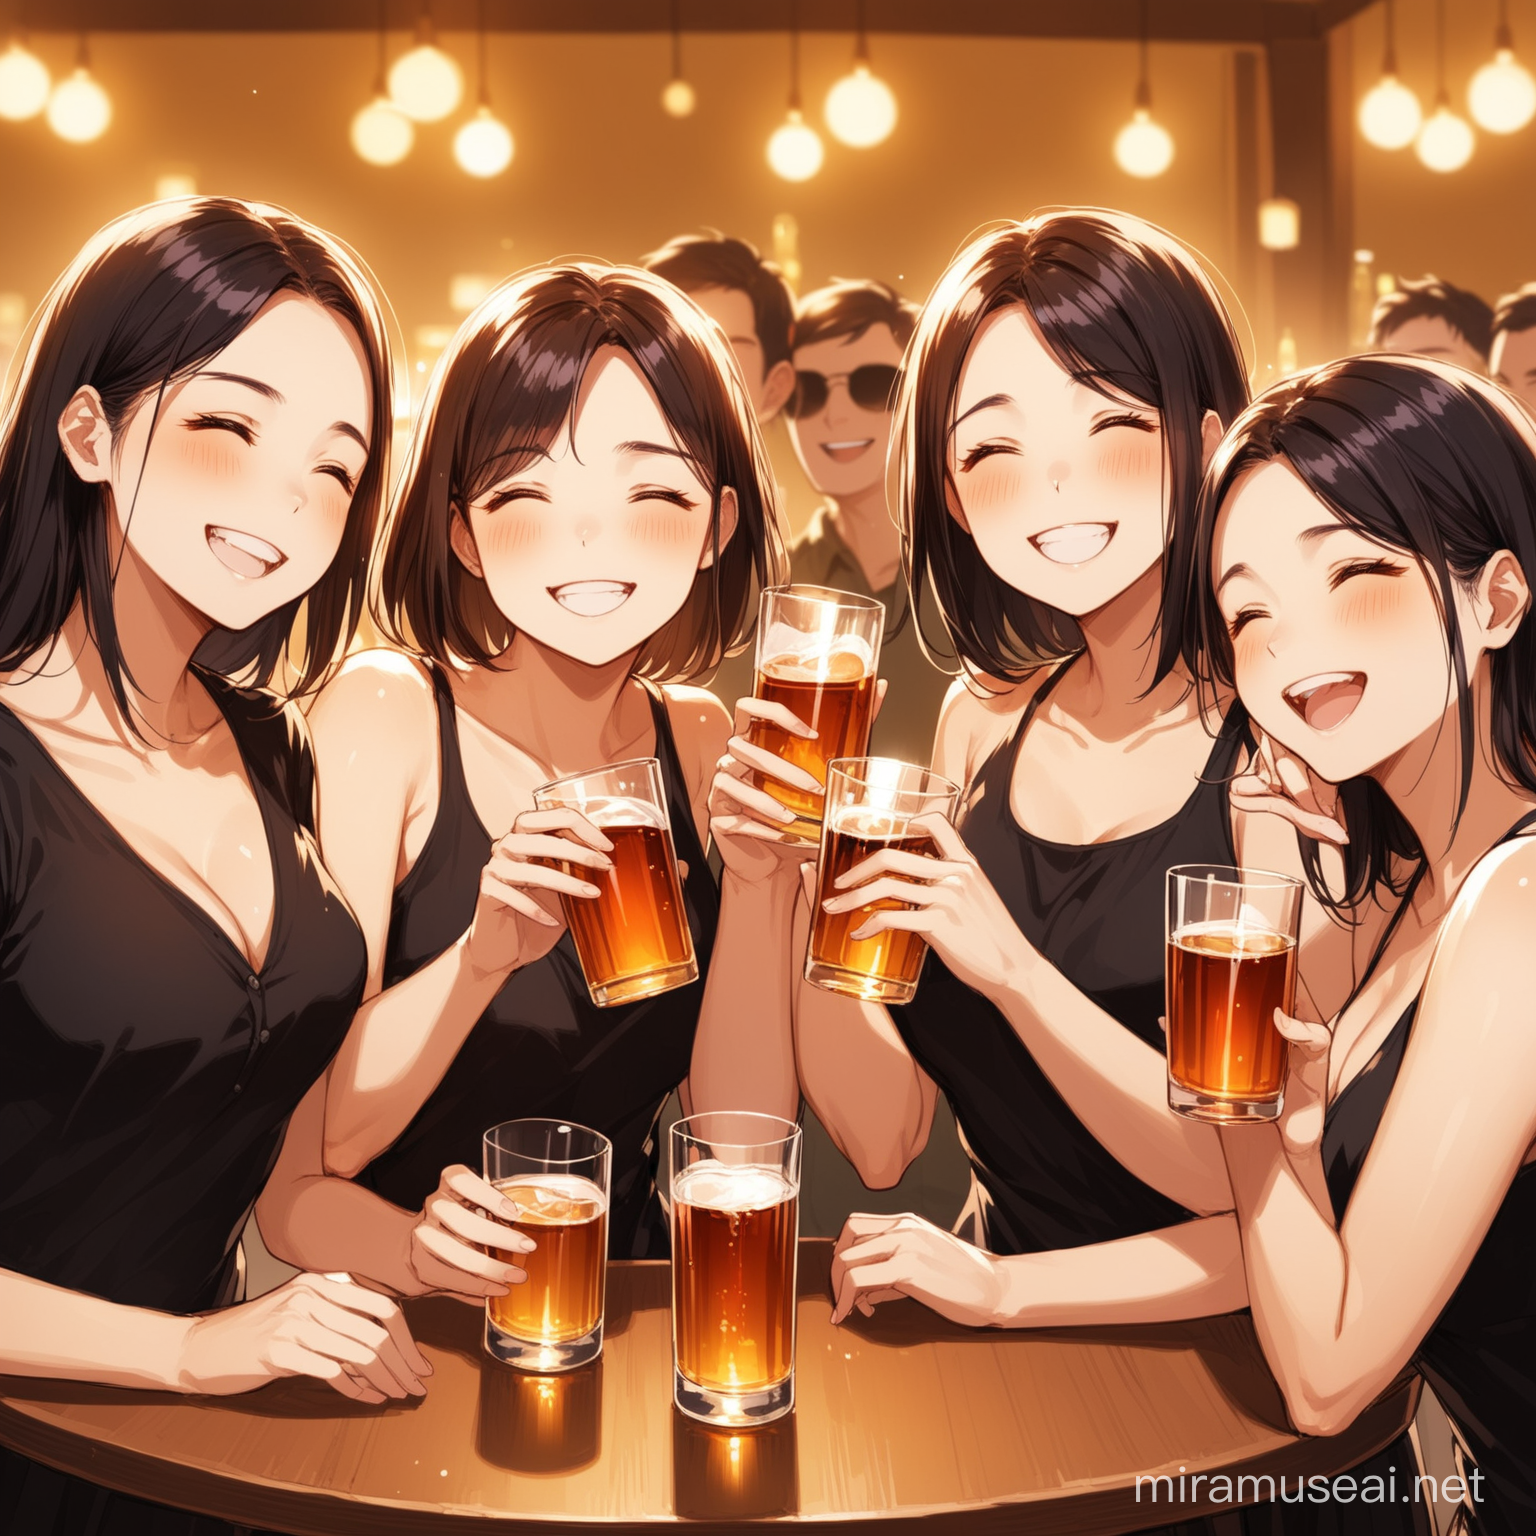 Joyful Gathering of Friends Enjoying Alcoholic Beverages